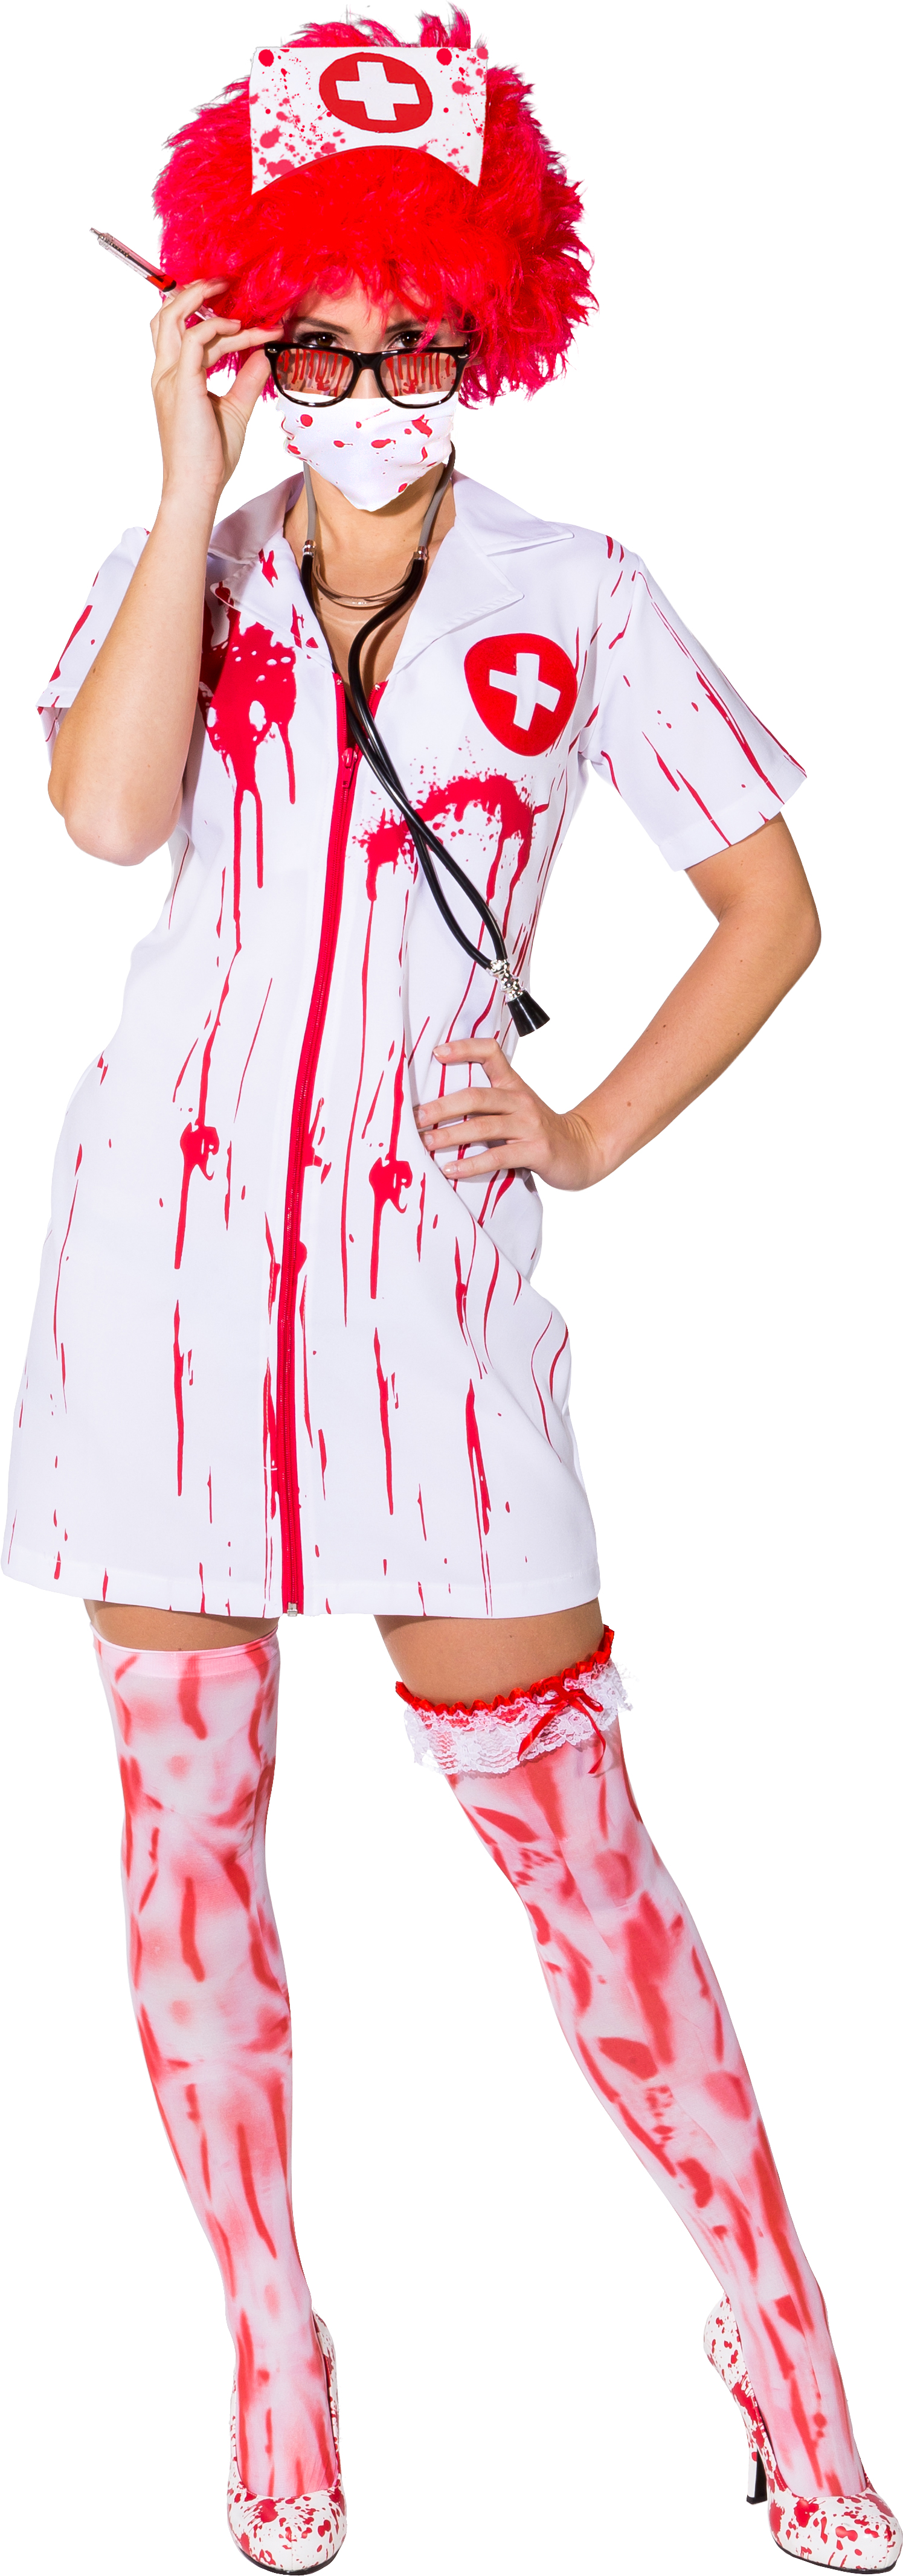 Nurse zombie